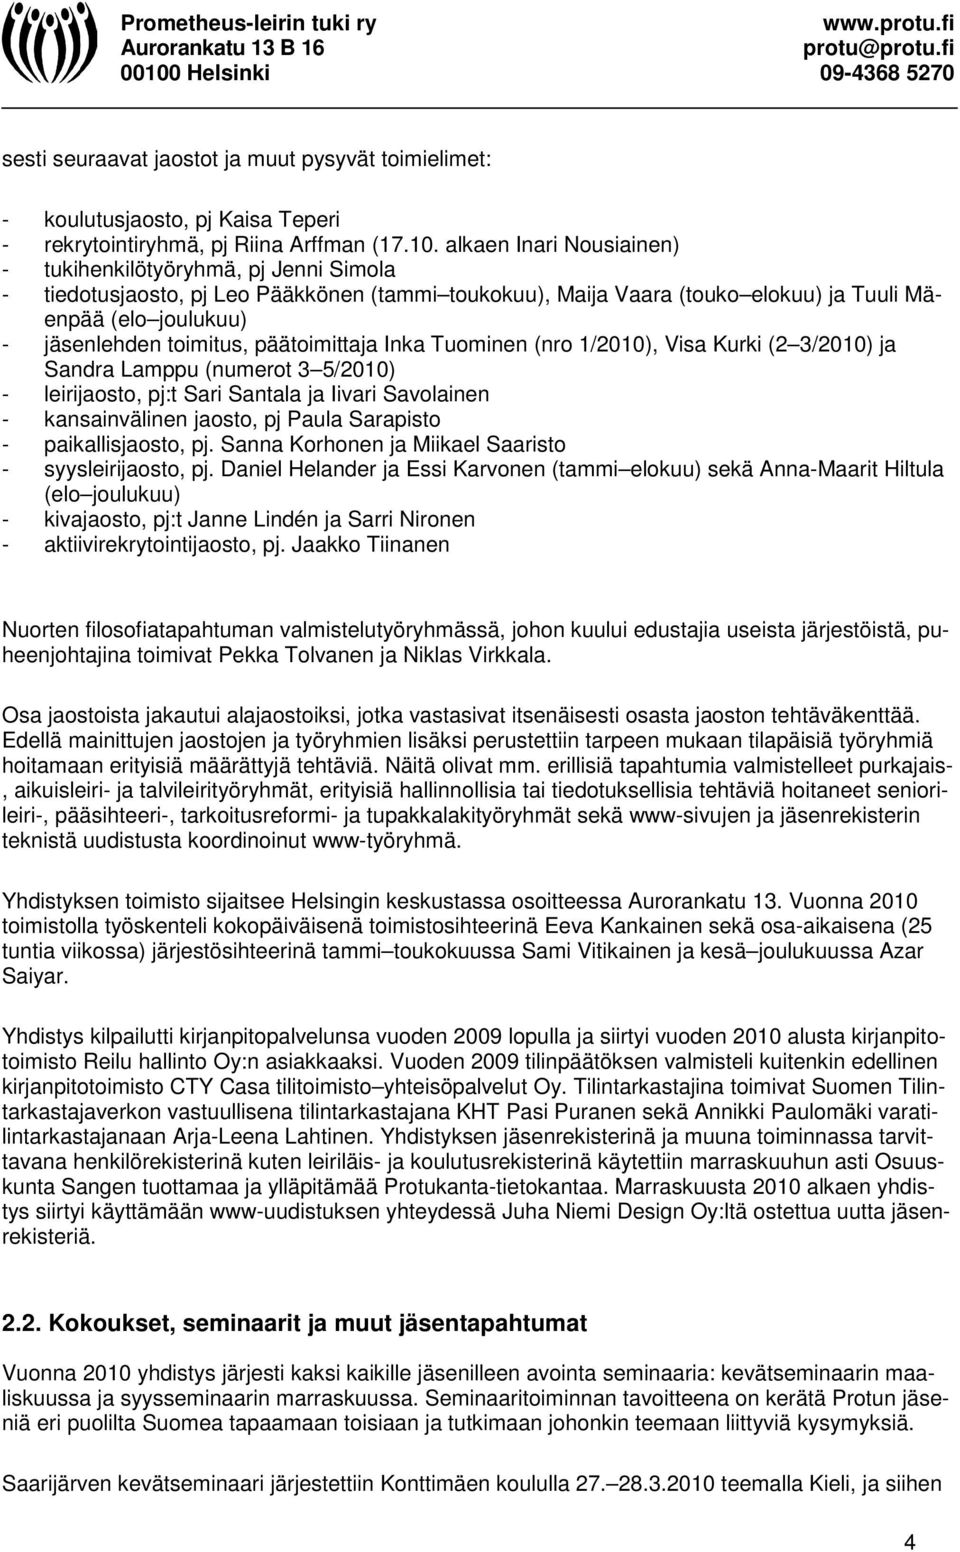 päätoimittaja Inka Tuominen (nro 1/2010), Visa Kurki (2 3/2010) ja Sandra Lamppu (numerot 3 5/2010) - leirijaosto, pj:t Sari Santala ja Iivari Savolainen - kansainvälinen jaosto, pj Paula Sarapisto -